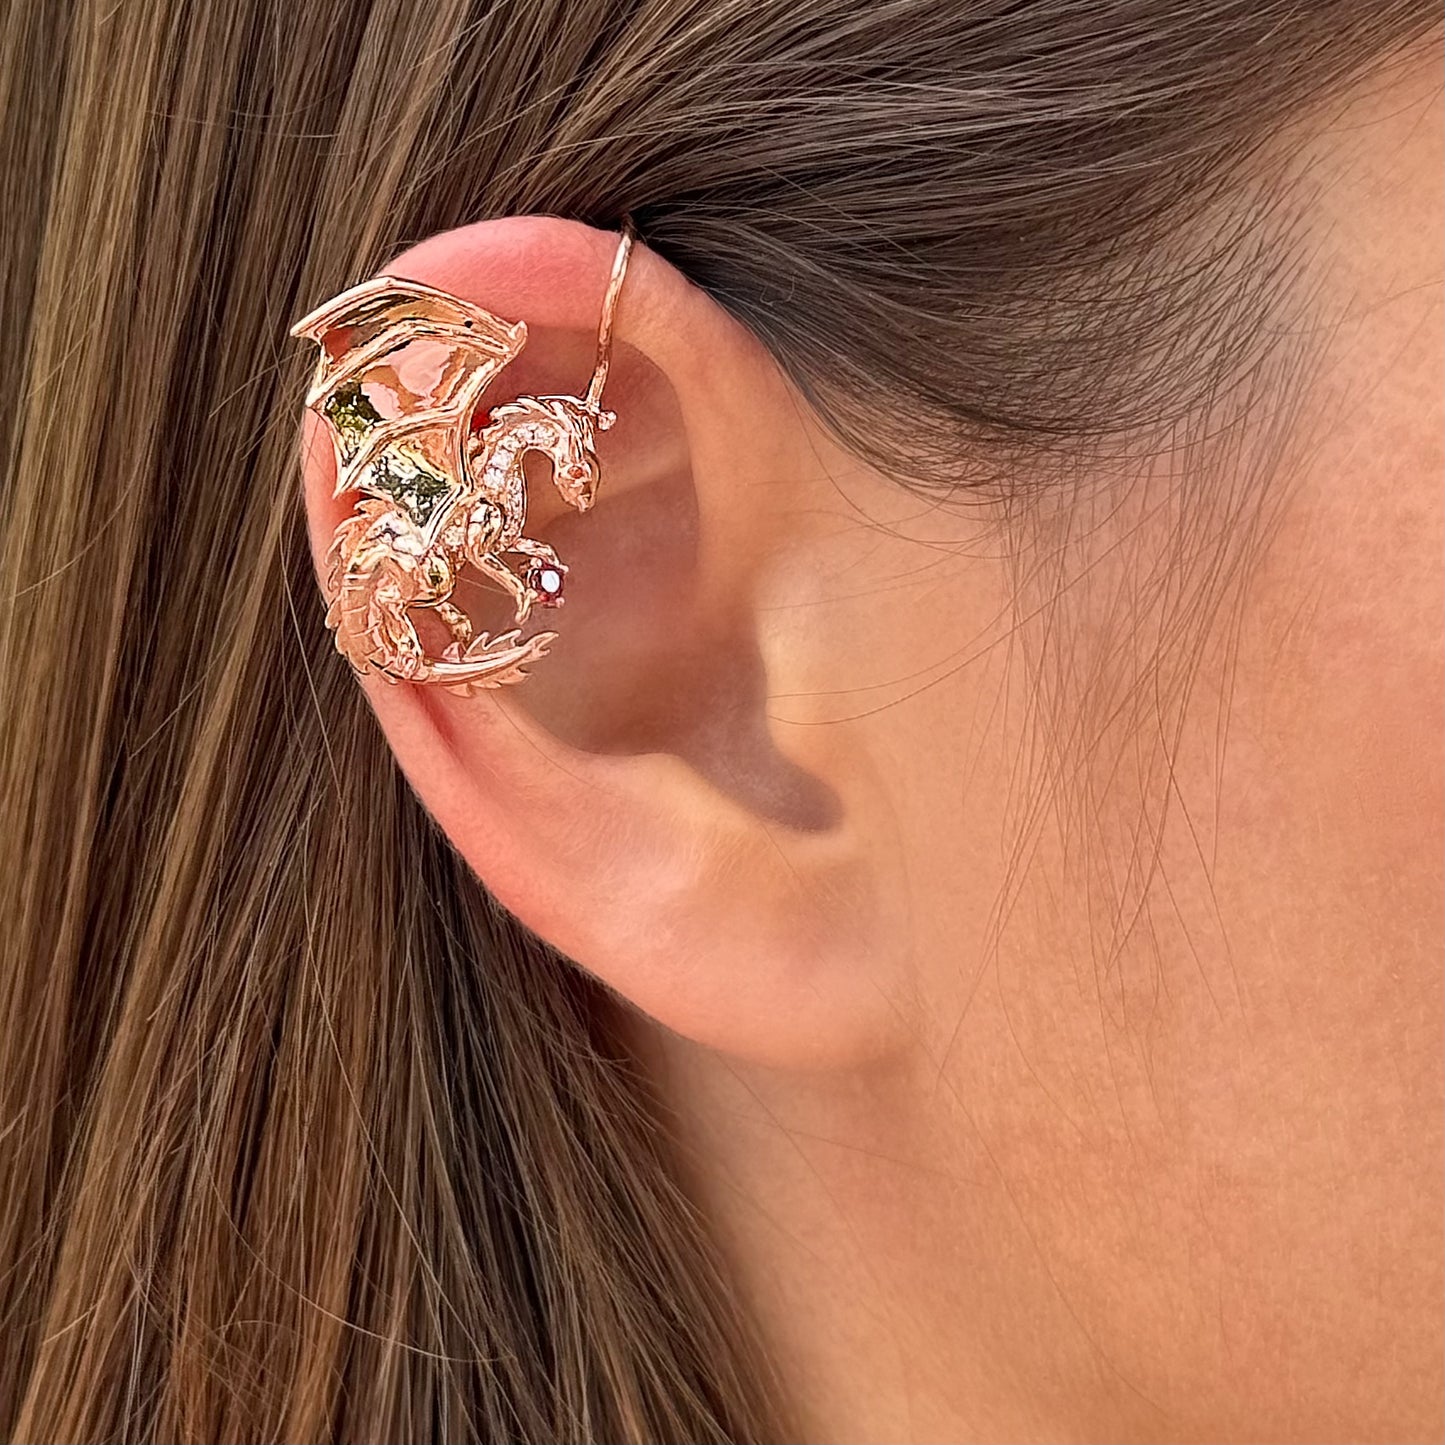 Dragon non-pierced ear cuff with CZ diamonds -  Black Silver